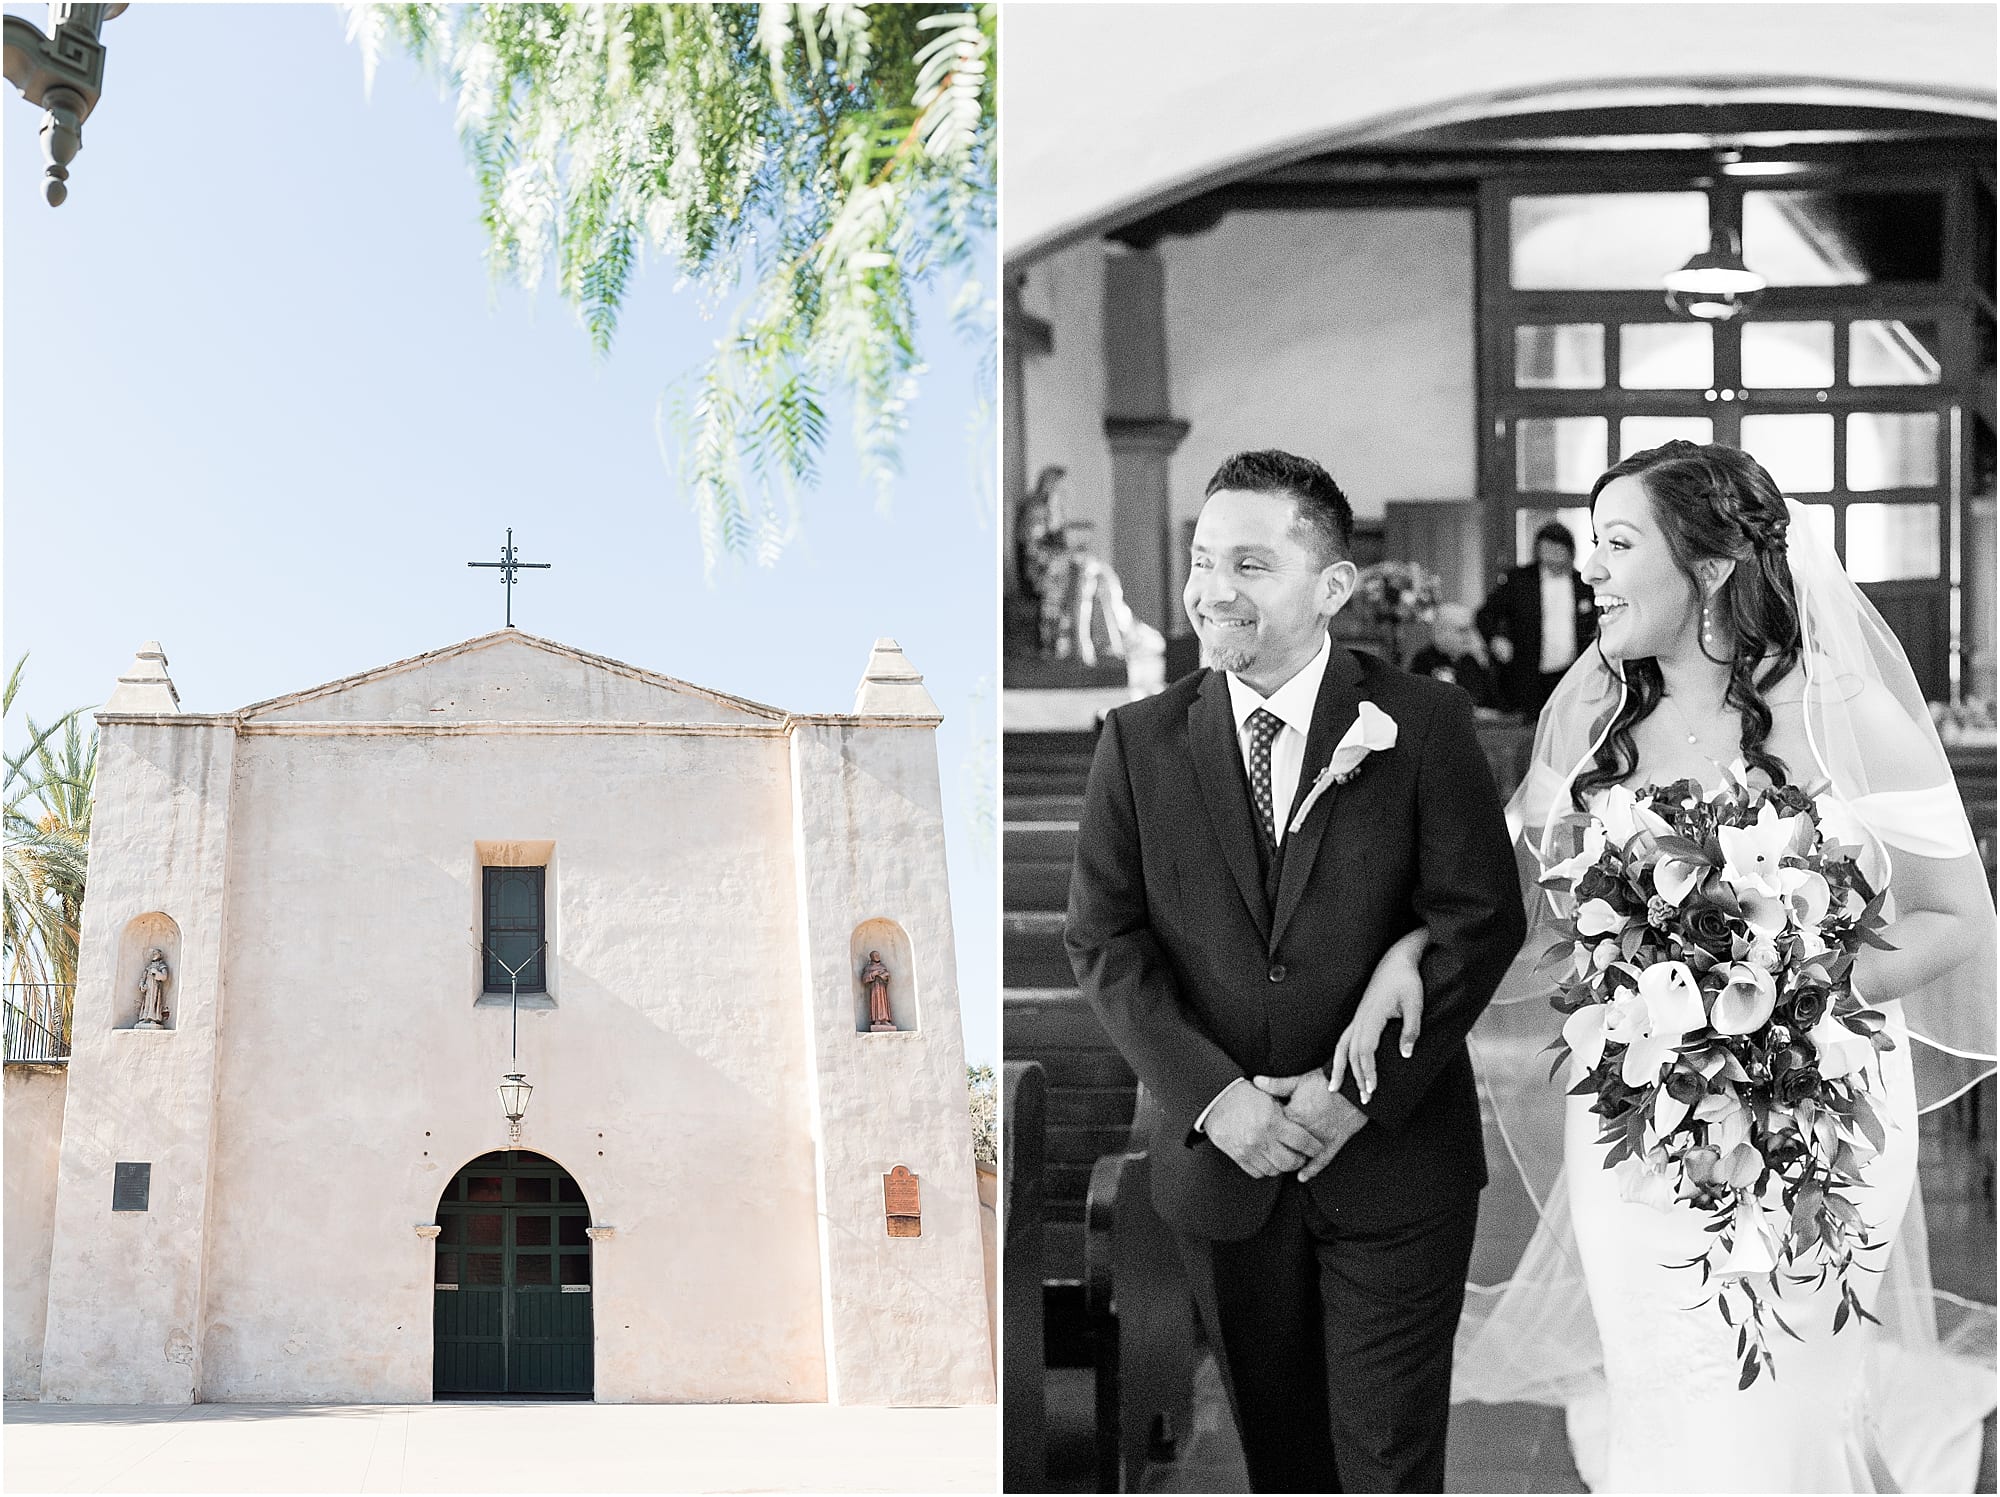  Elegant Colorful Inspired wedding | Spanish Mission | San Gabriel Mission Wedding